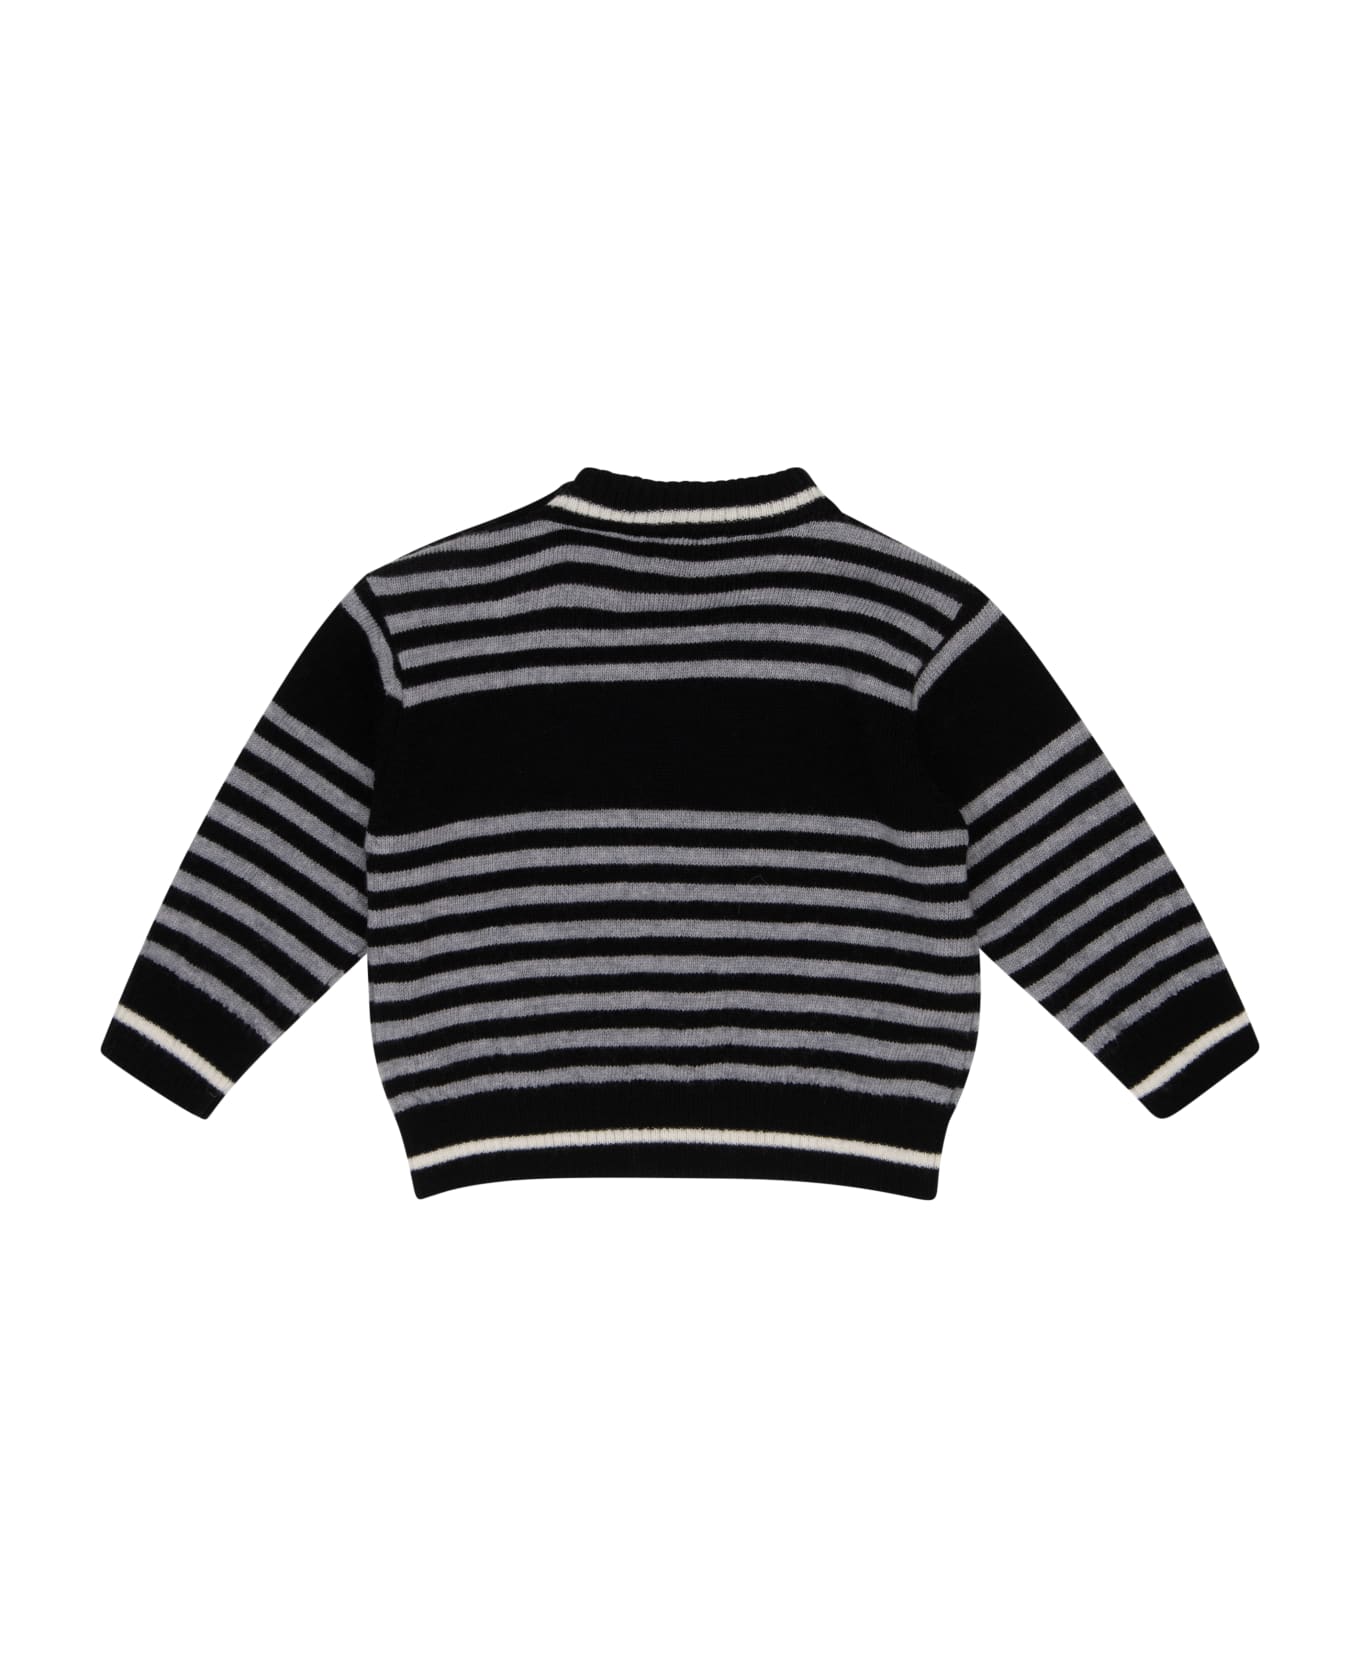 Balmain Printed Sweater - Black